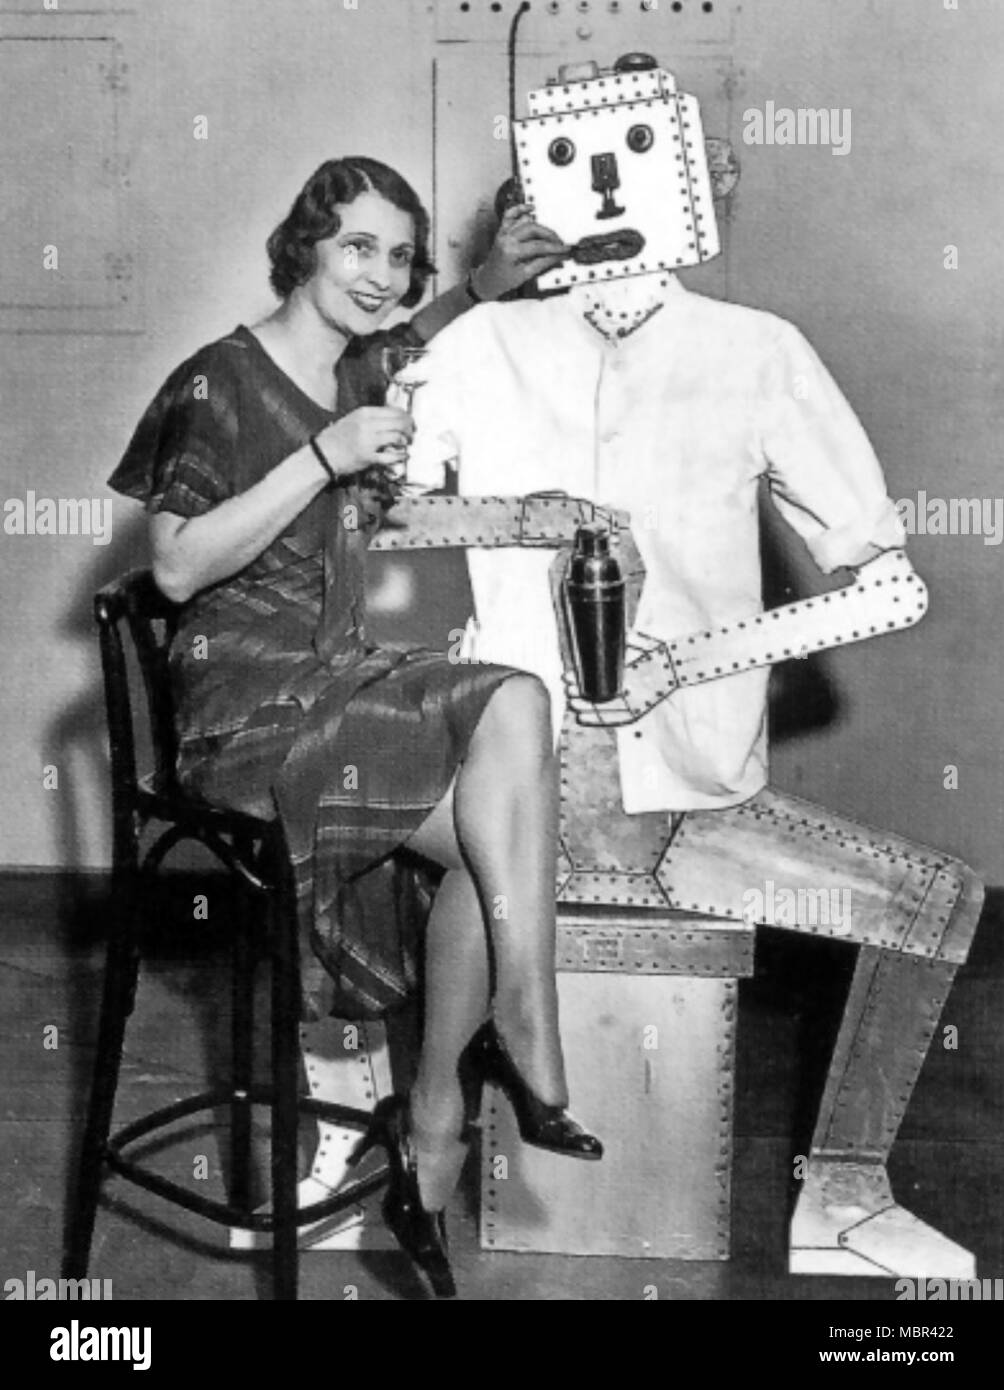 Roboter Barkeeper ein Anfang der 1930er Jahre Eindruck, was Roboter tun könnte. Stockfoto